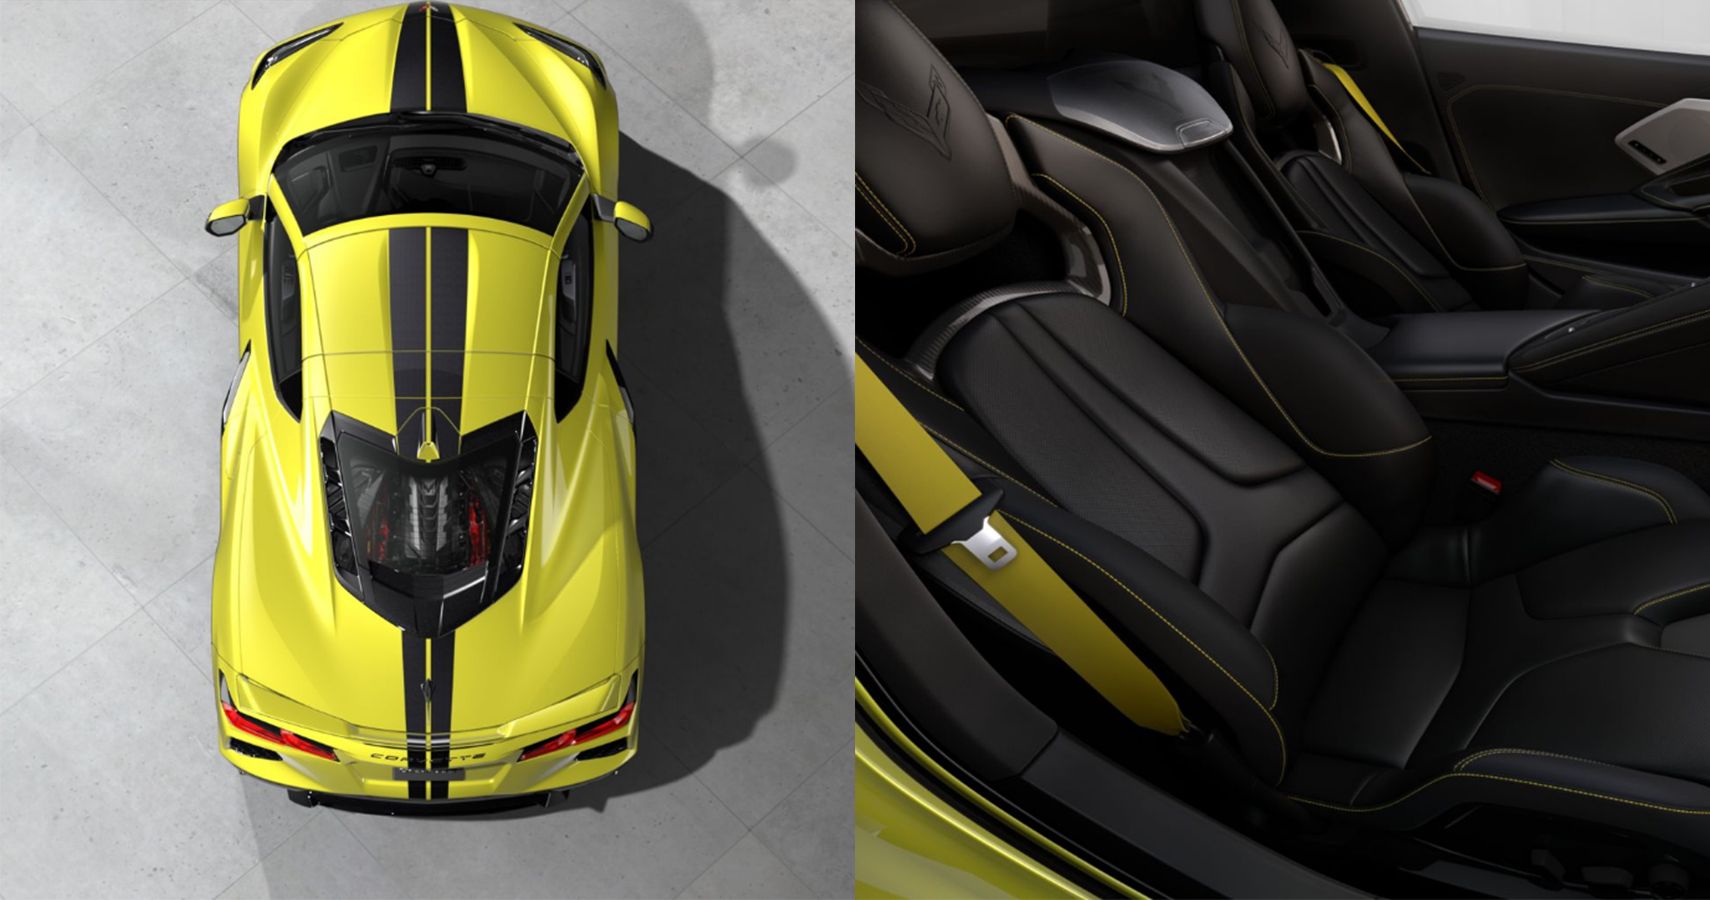 2020 Chevrolet Corvette Stingray exterior and interior